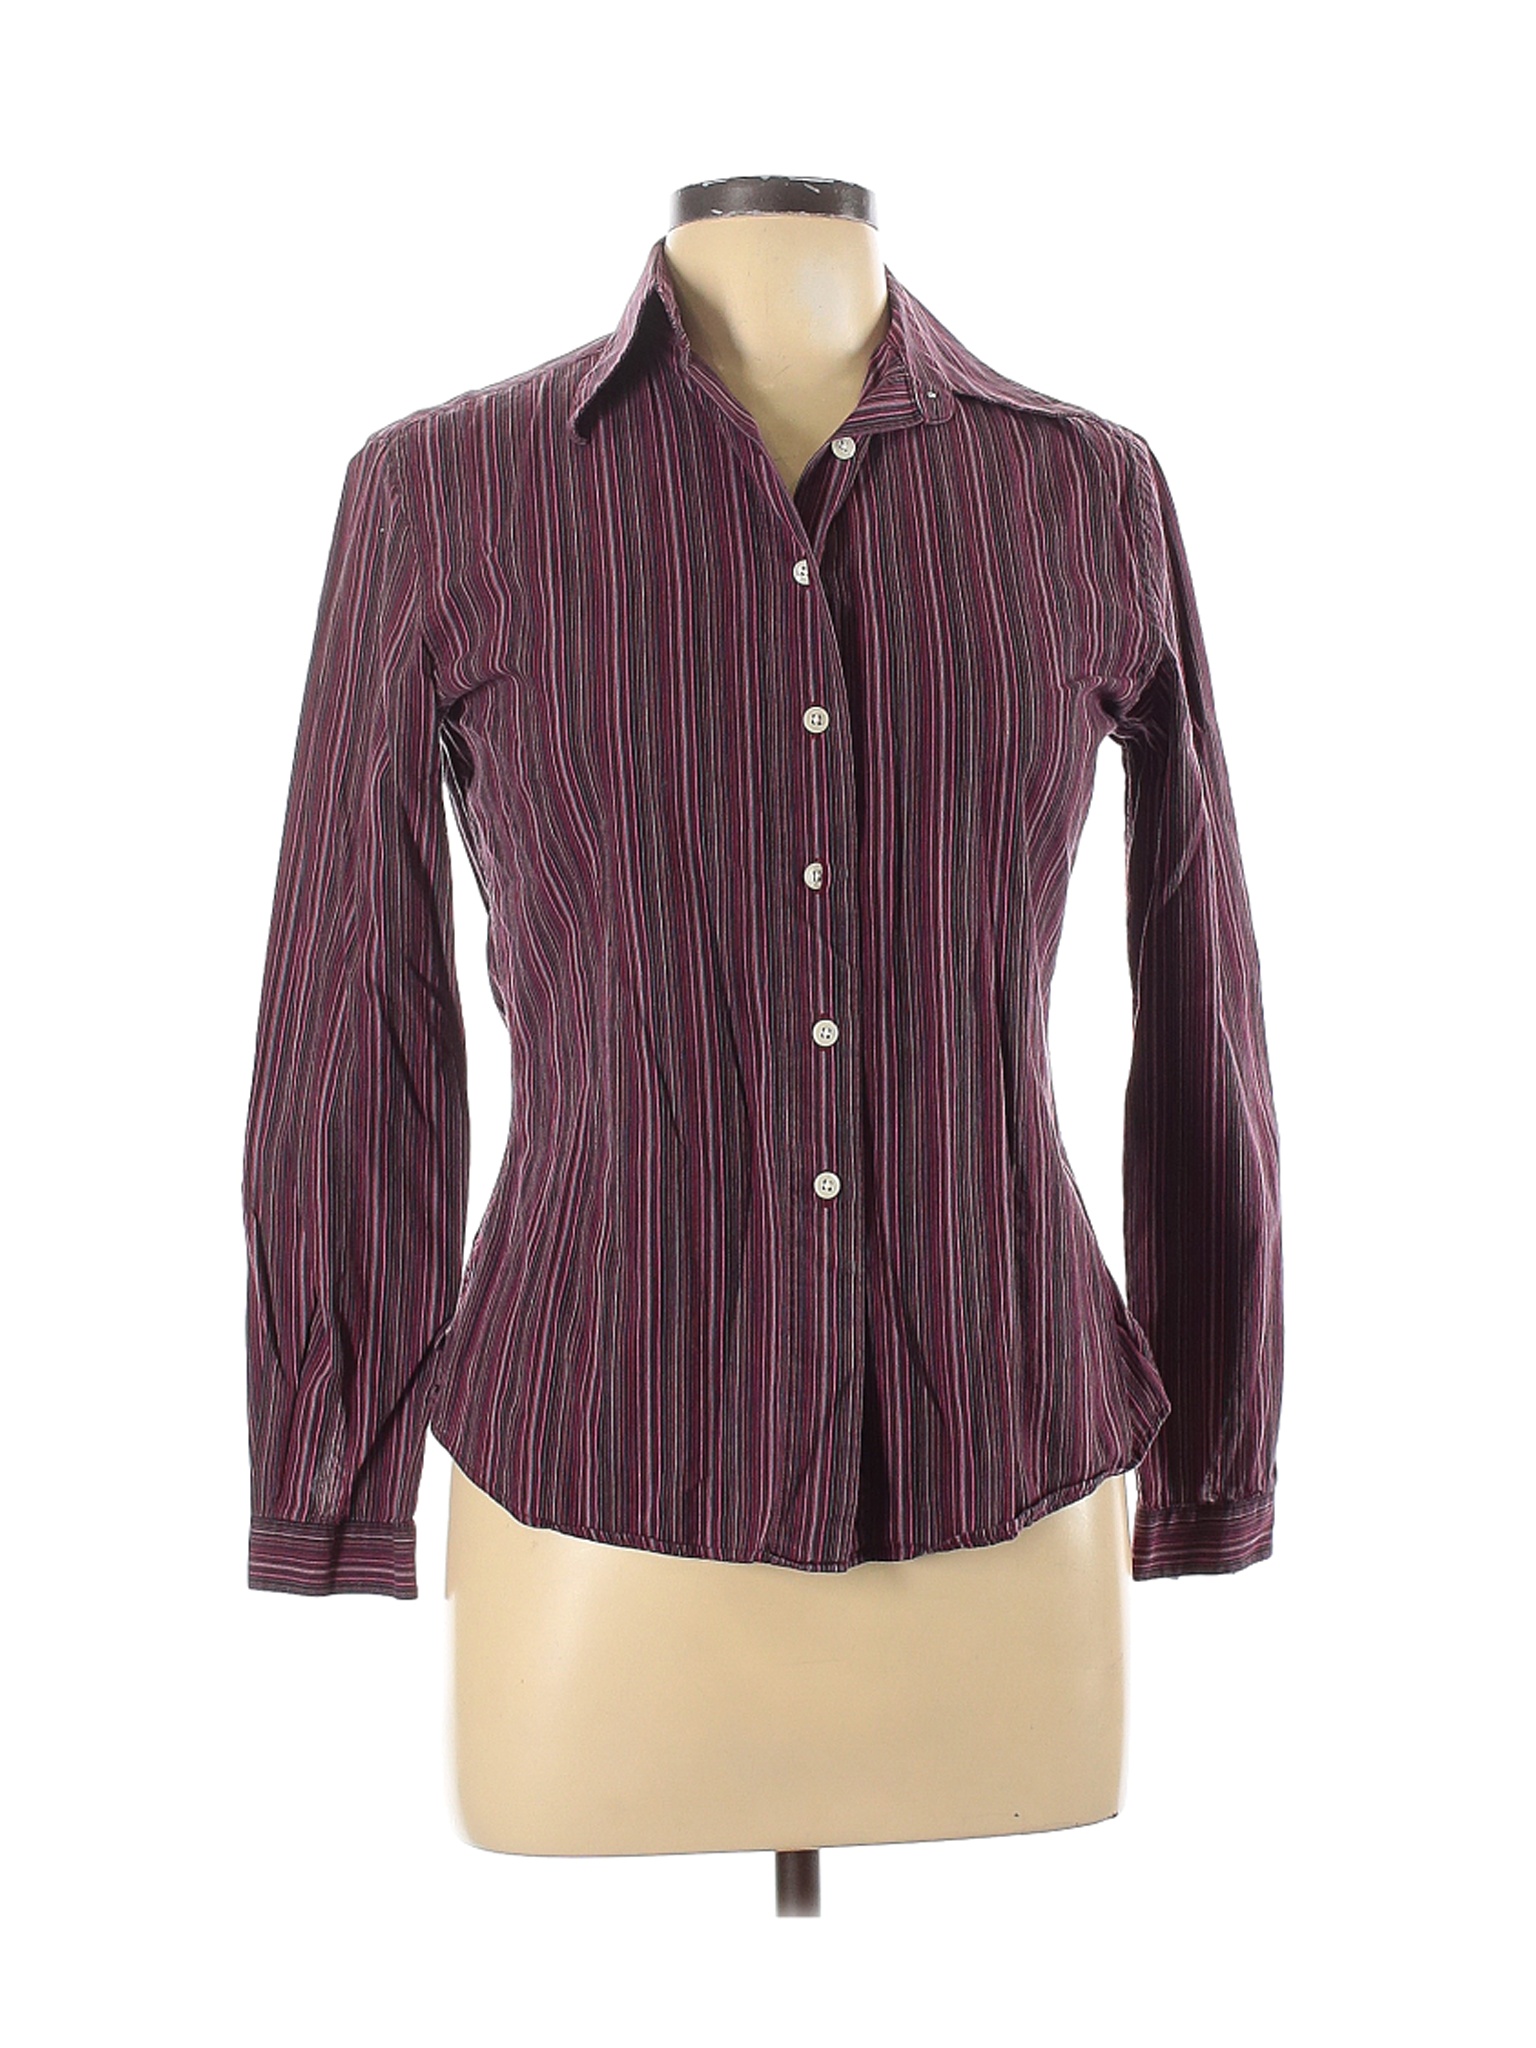 Assorted Brands Women Purple Long Sleeve Button-Down Shirt 6 | eBay